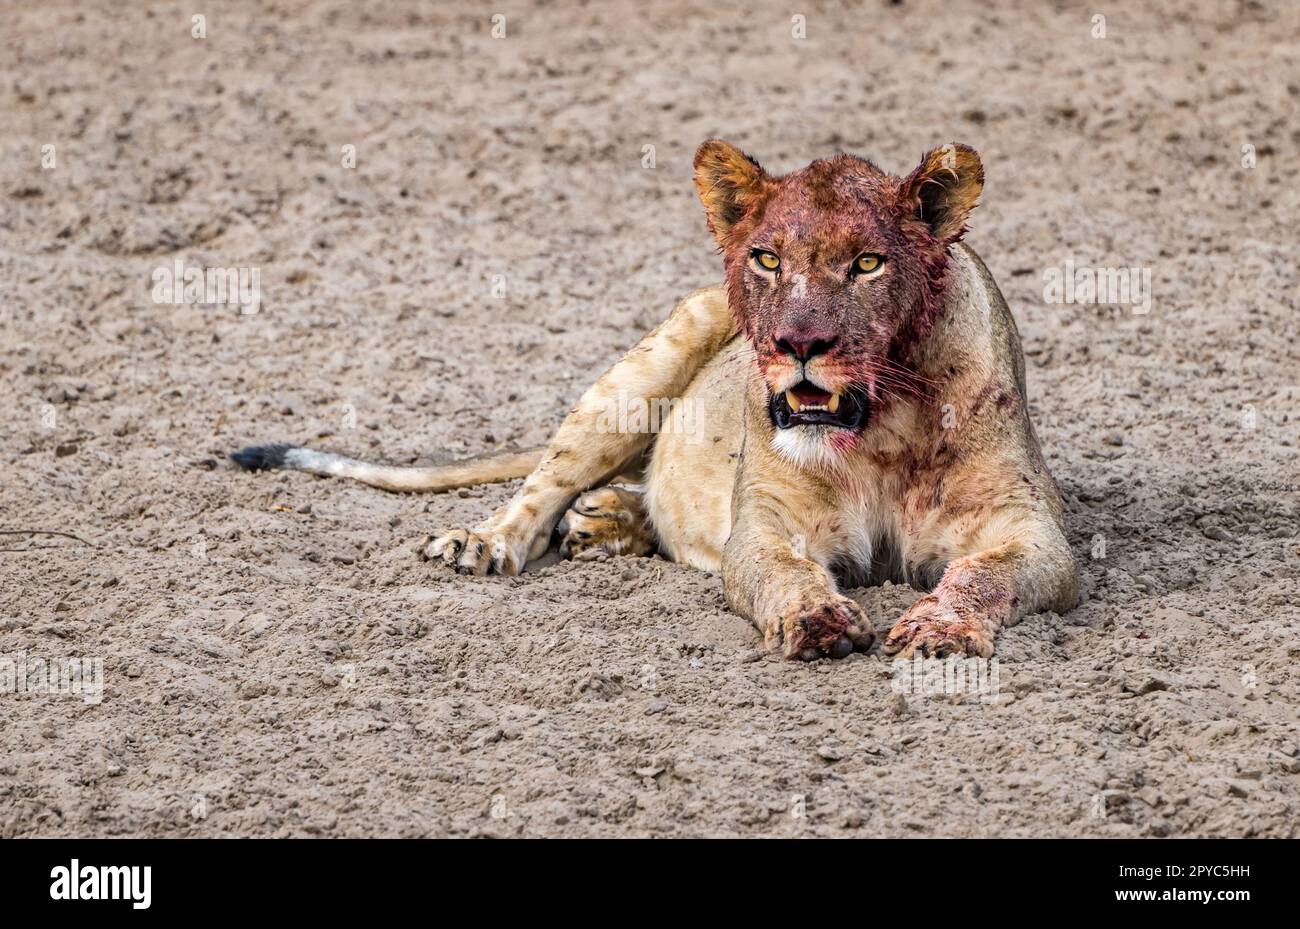 Une jeune femme lion (Panthera leo) se reposant avec du sang sur son visage de se nourrir d'une mort, désert de Kalahari, Botswana, Afrique Banque D'Images